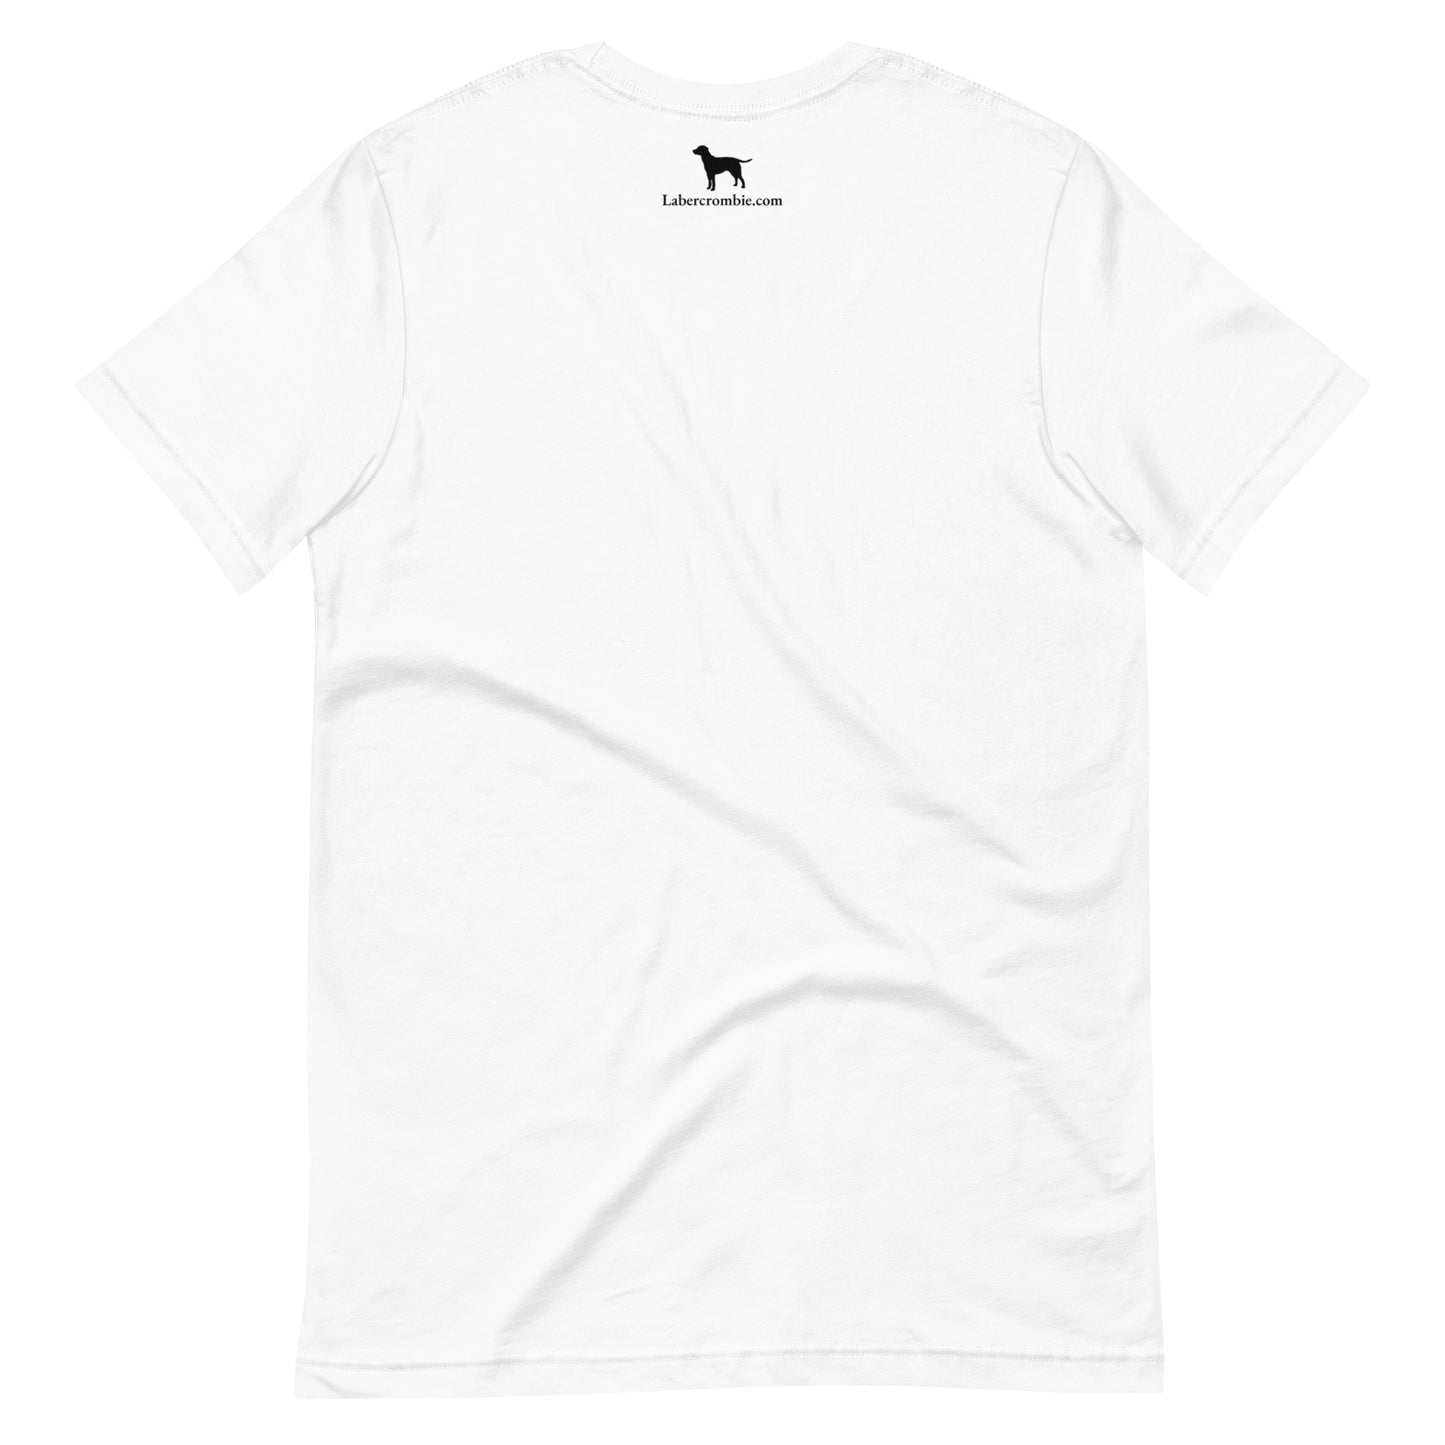 Royal Labercrombie Unisex t-shirt